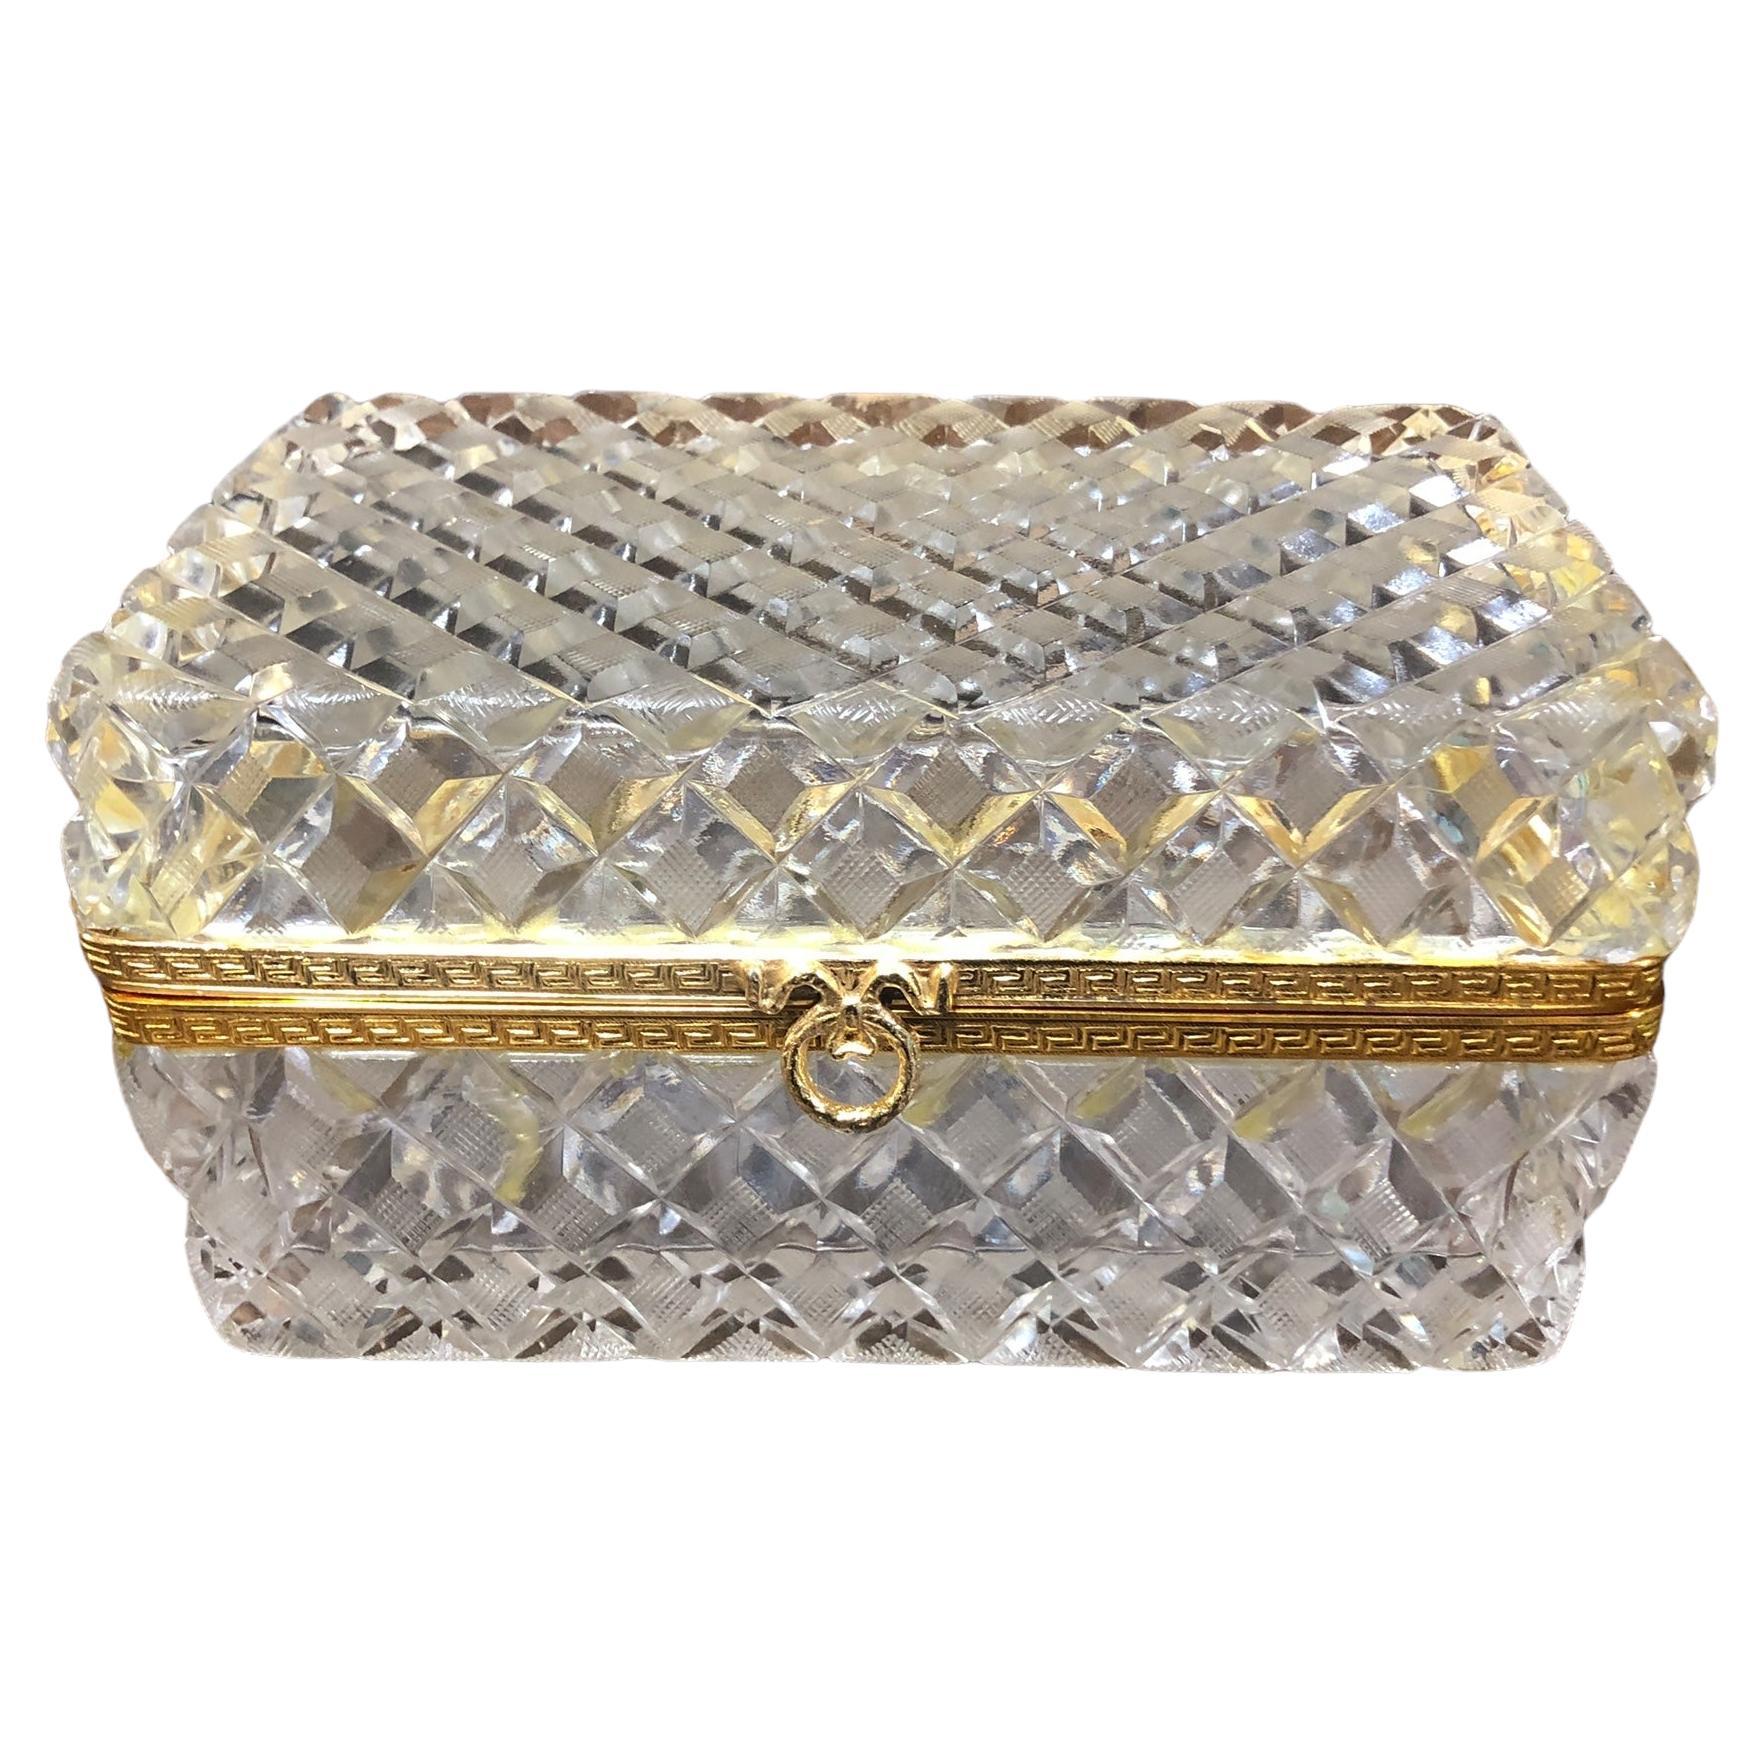 Grande boîte en cristal taillé avec montures en bronze doré